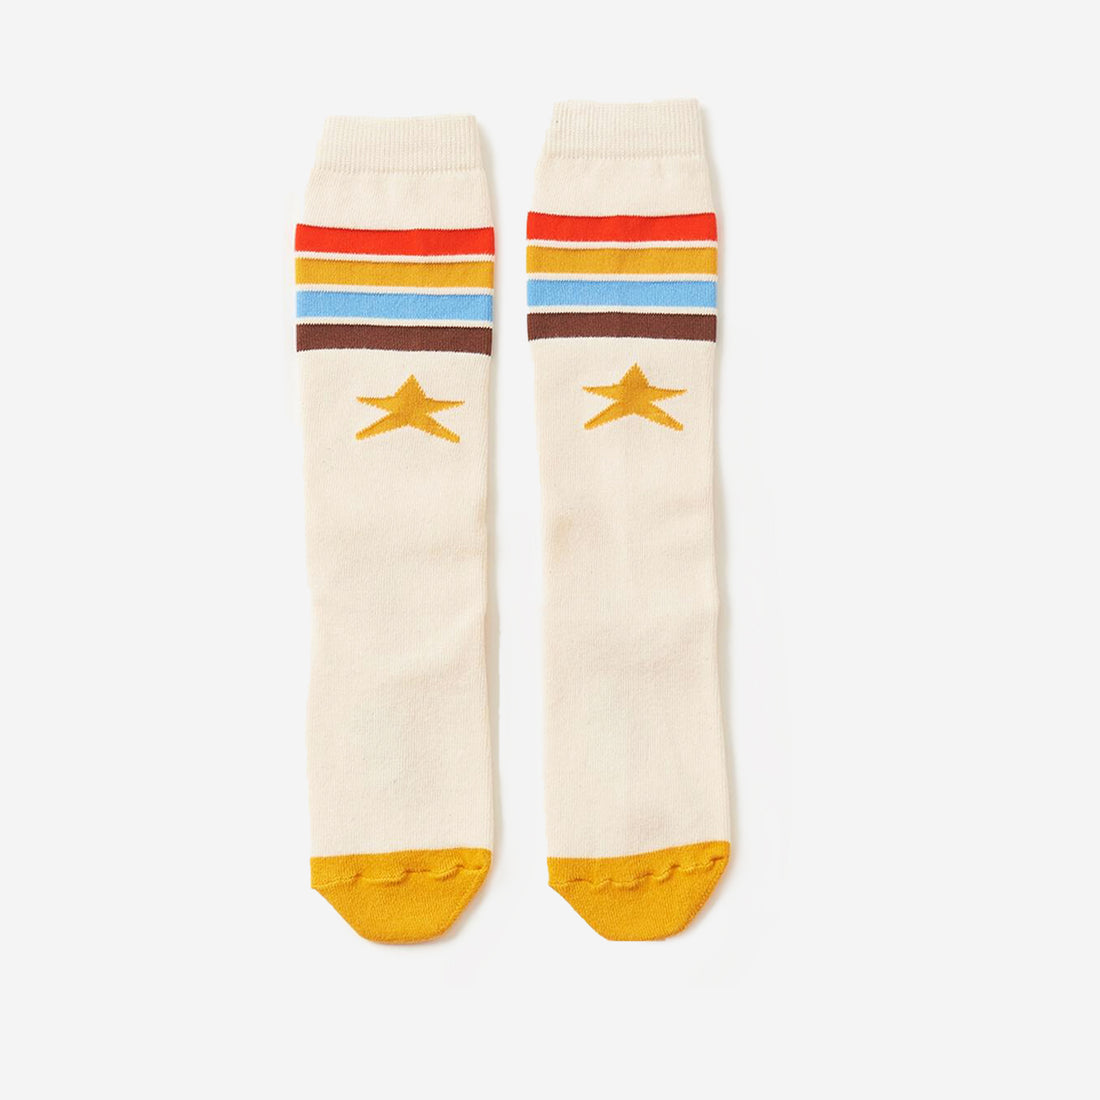 Rainbow Kneehigh Socks